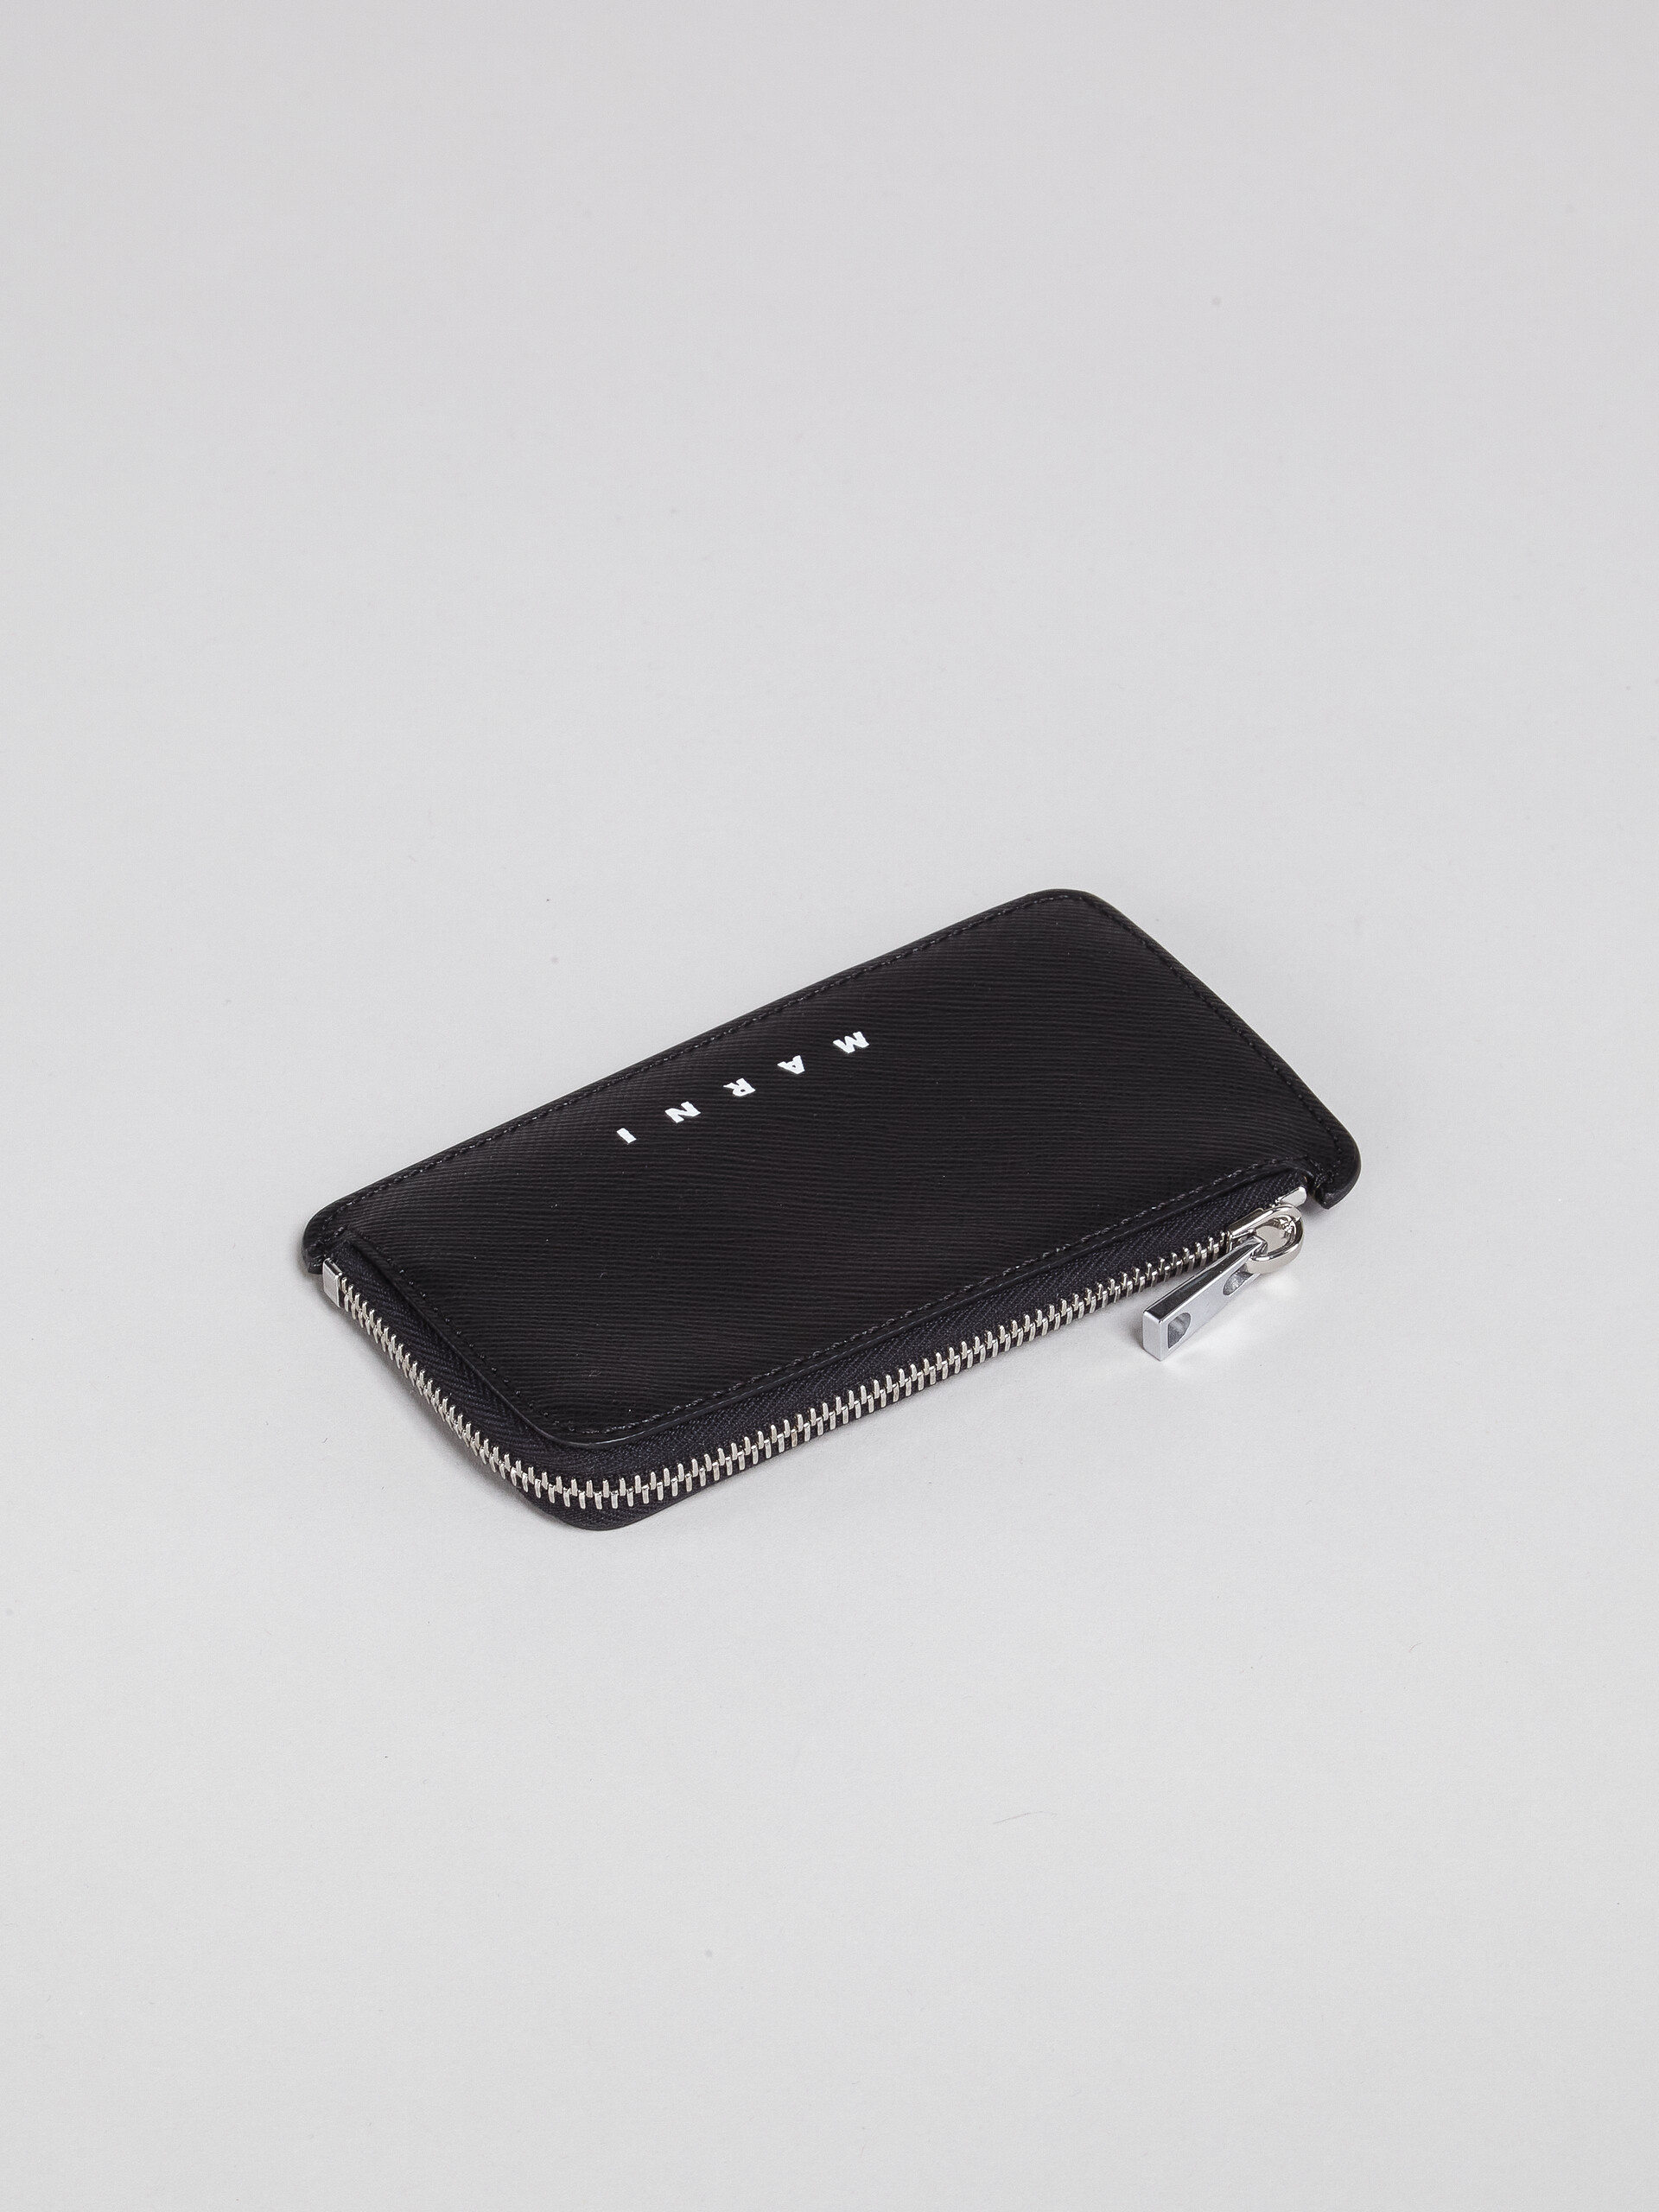 サフィアーノレザー ジップ式カードケース - 財布 - Image 5